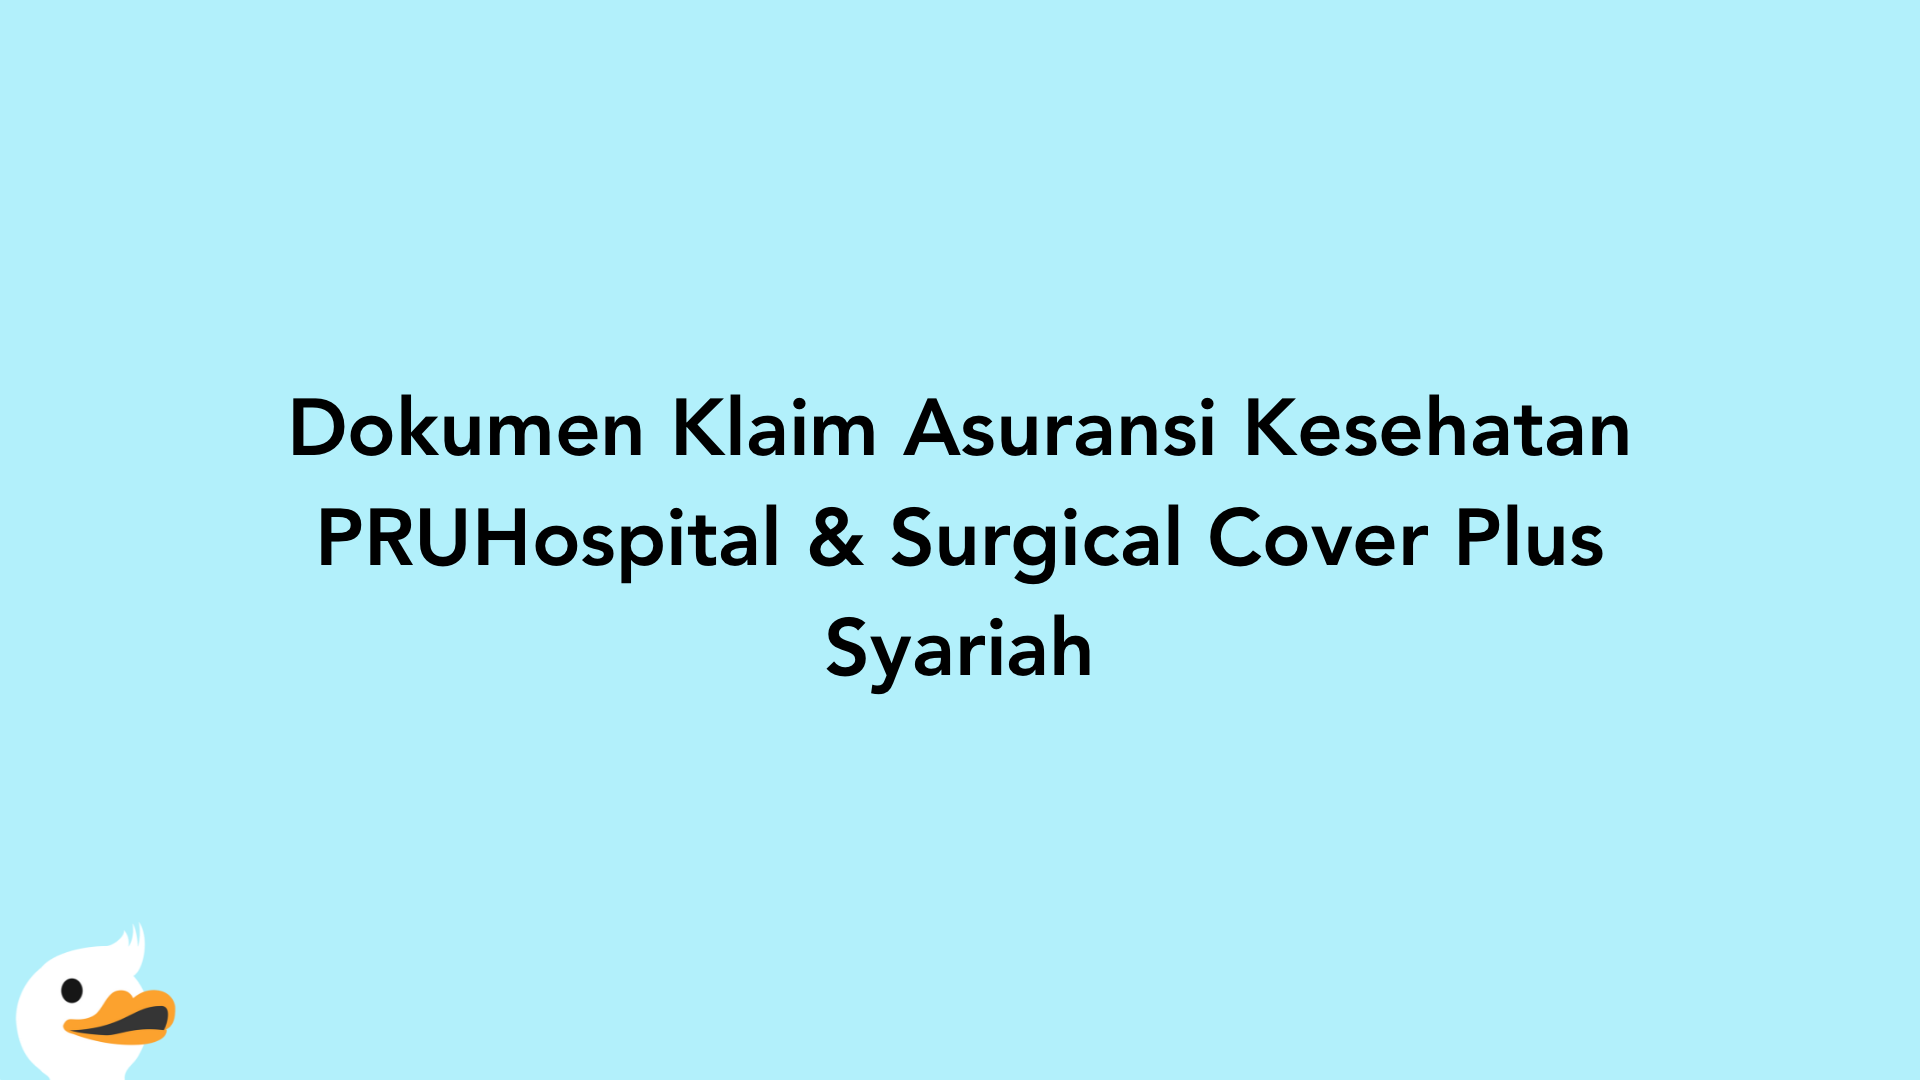 Dokumen Klaim Asuransi Kesehatan PRUHospital & Surgical Cover Plus Syariah